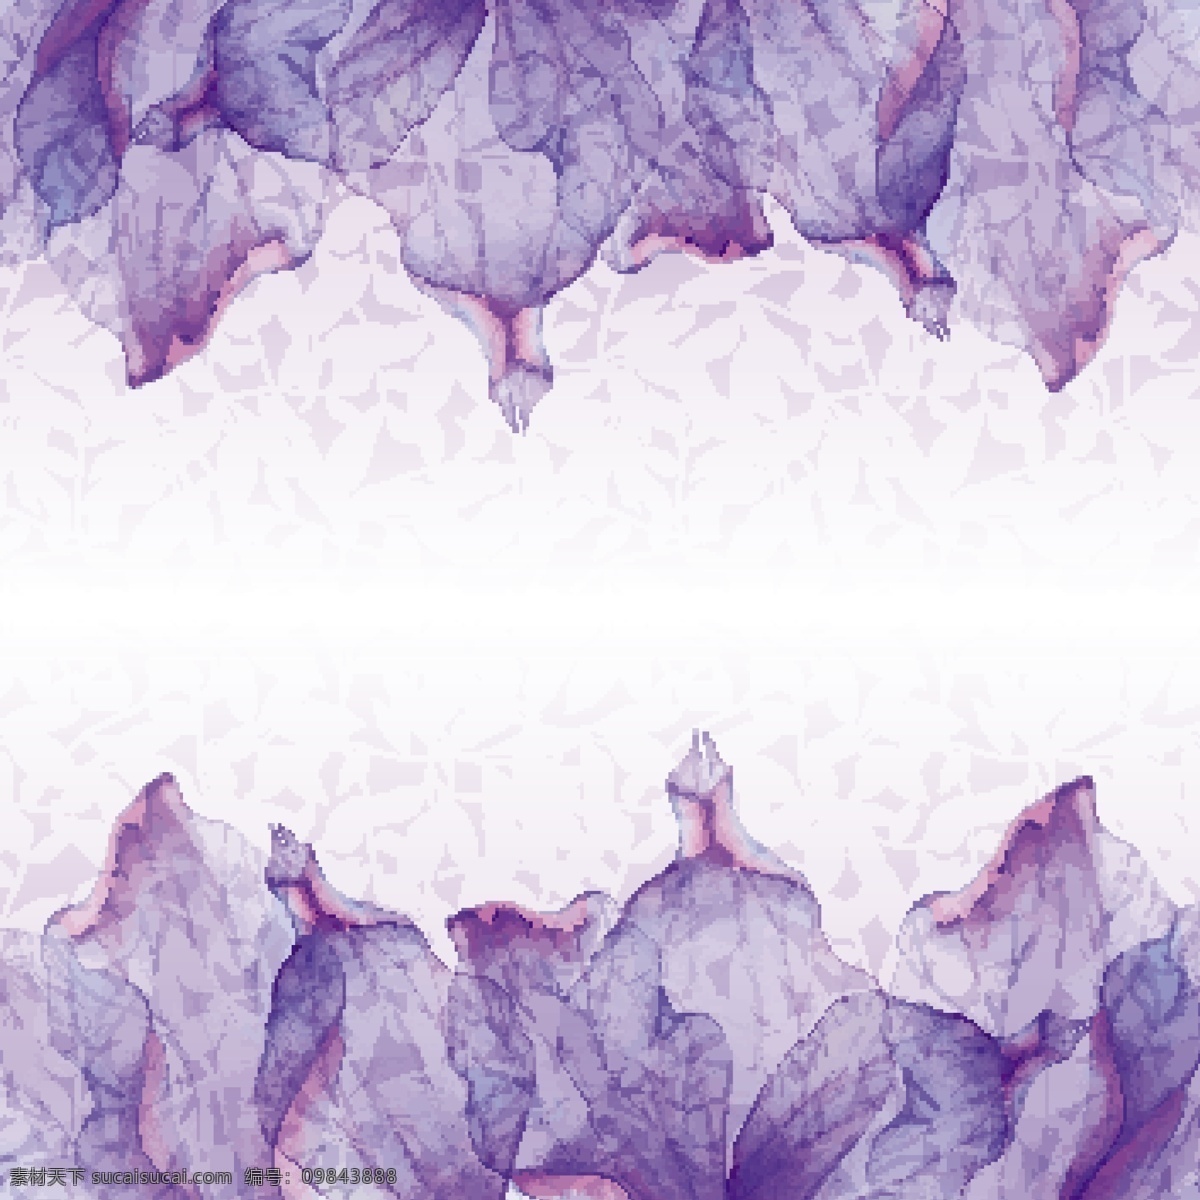 紫色 渲染 对称 花朵 彩色 唯美 矢量 梦幻花朵 对称花朵 花瓣 绽放 唯美梦幻背景 梦幻花纹 创意背景 抽象背景 底纹背景 底纹 边框矢量素 白色